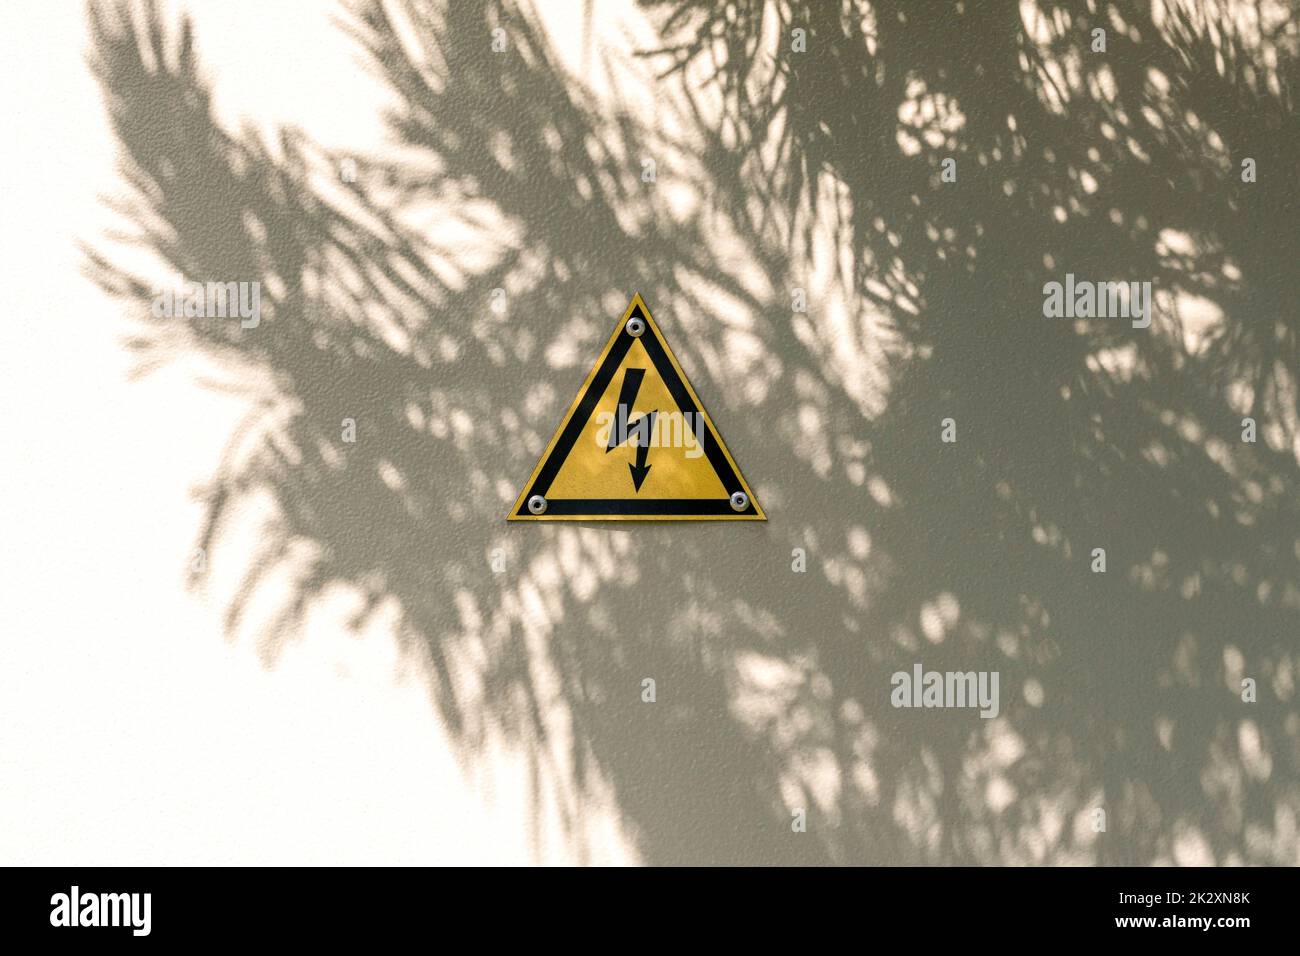 Simbolo di avvertimento a triangolo giallo ad alta tensione sulle porte in metallo grigio con ombra d'albero Foto Stock